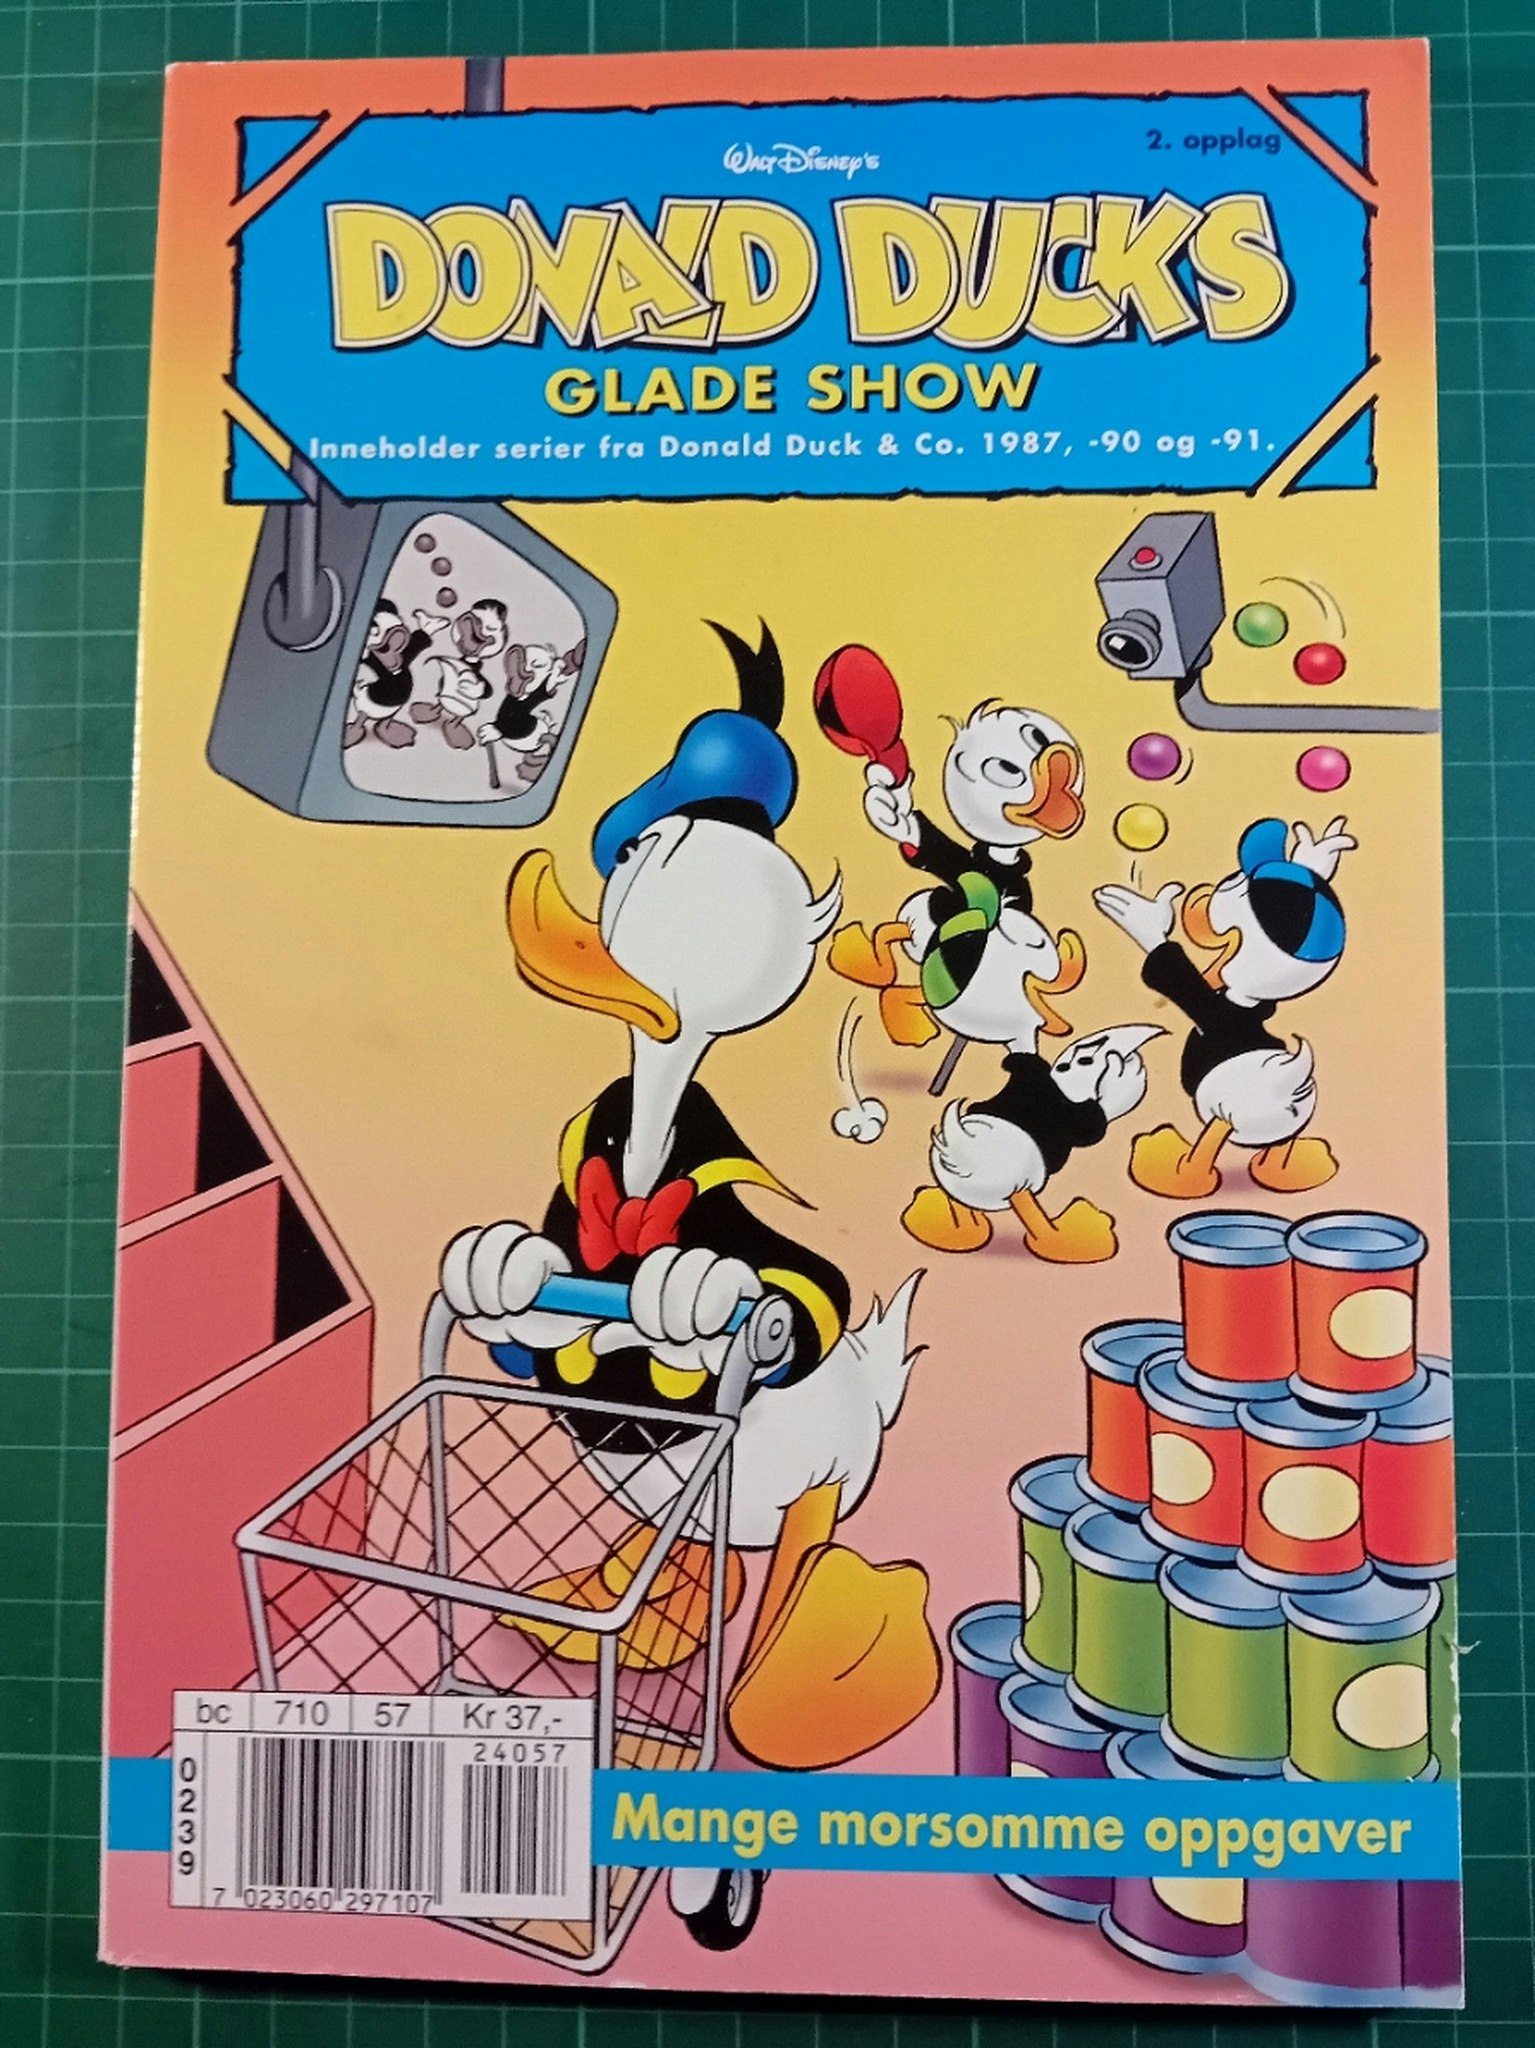 Donald Ducks 2002 Glade show